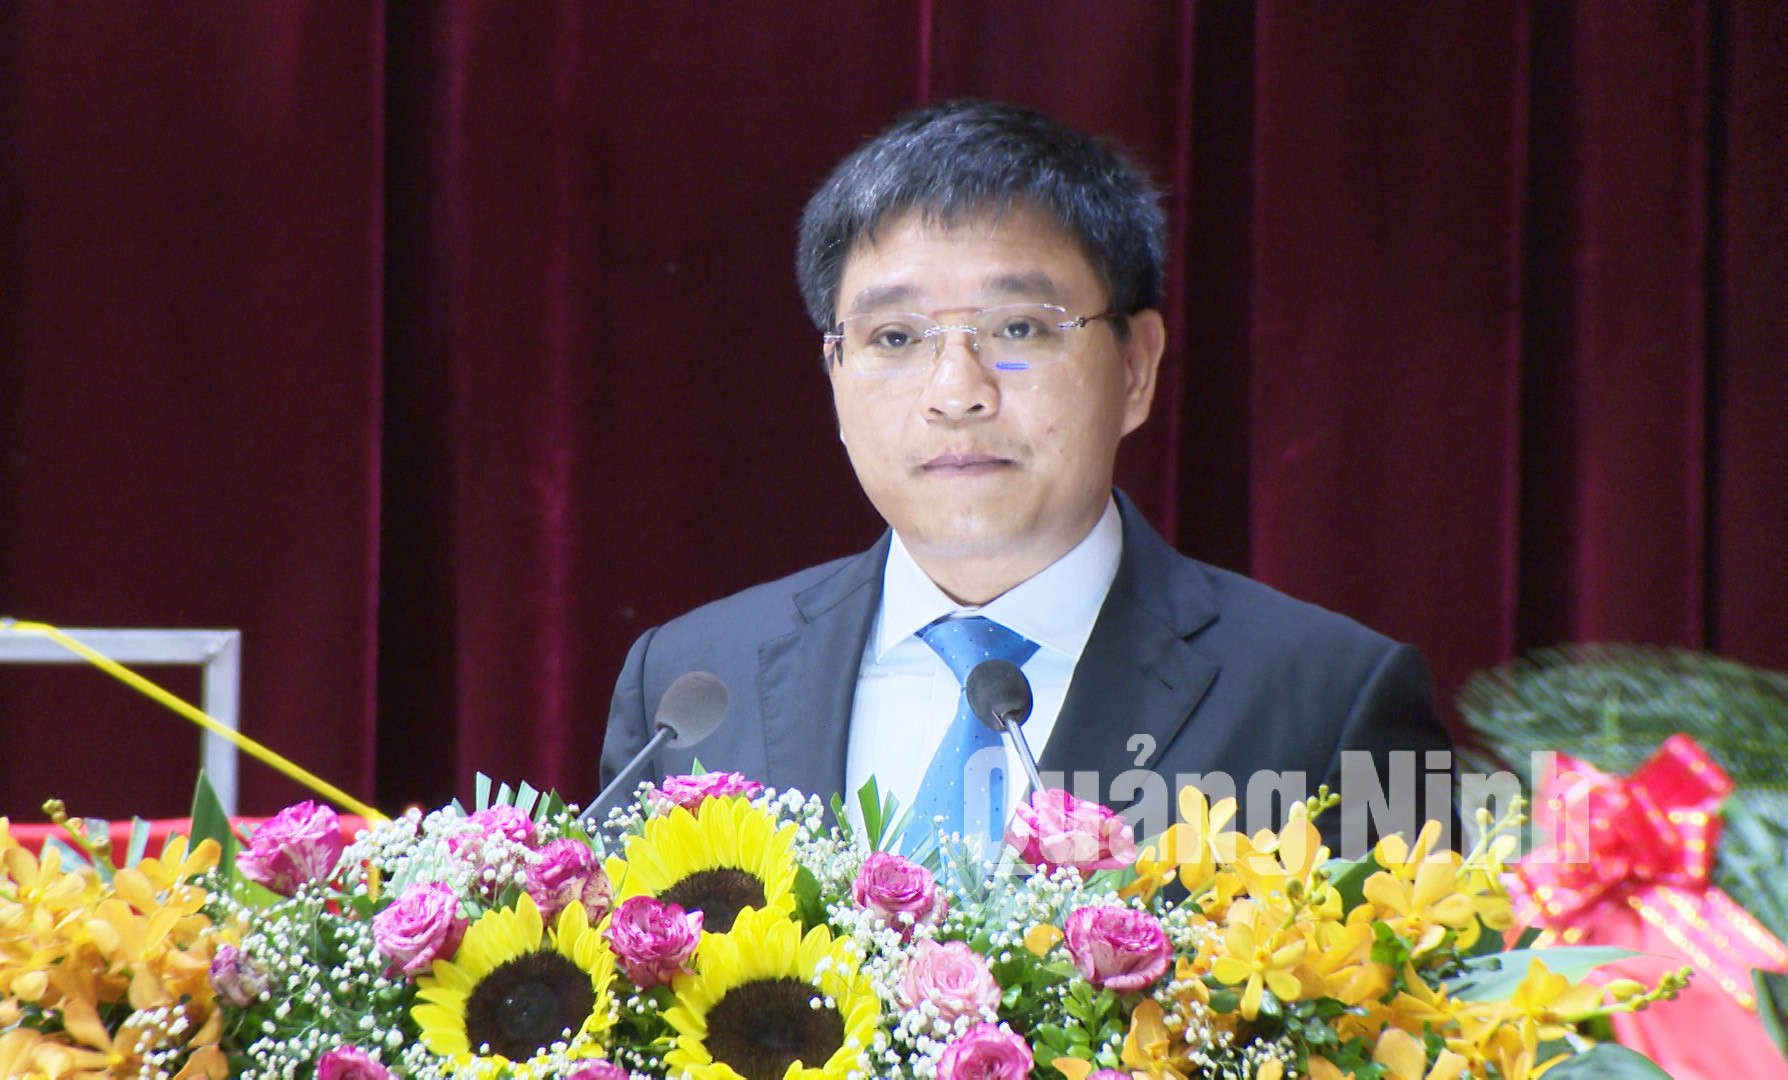 Đồng chí Nguyễn Văn Thắng, Phó Bí thư Tỉnh ủy, Chủ tịch UBND tỉnh, phát biểu tại Đại hội.